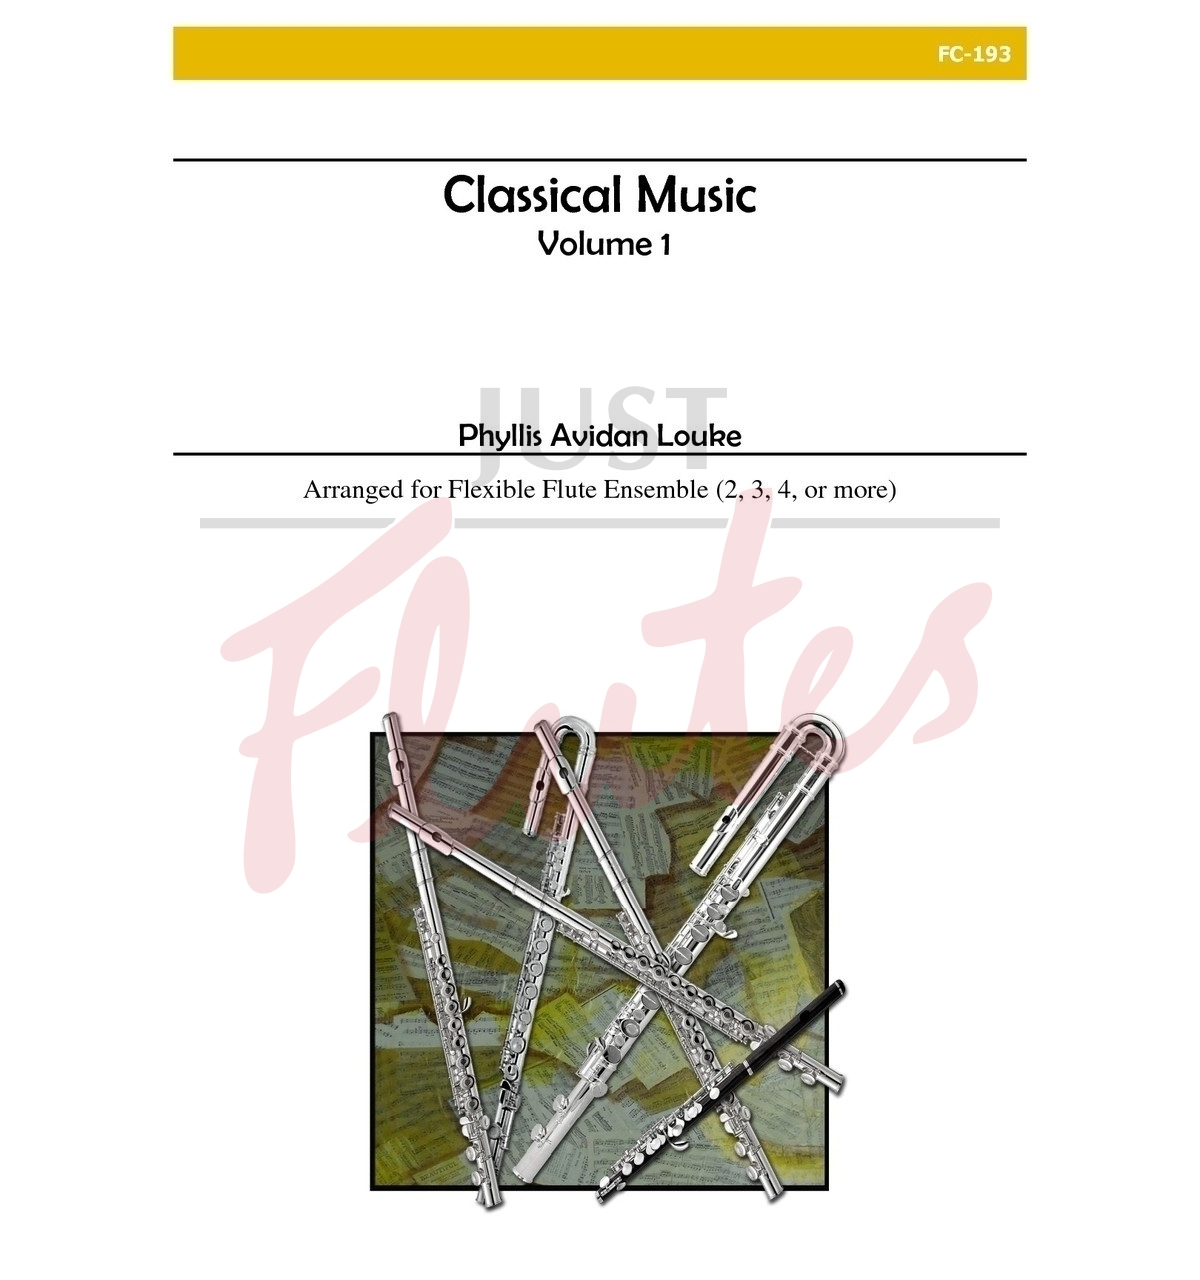 Classical Music, Volume 1